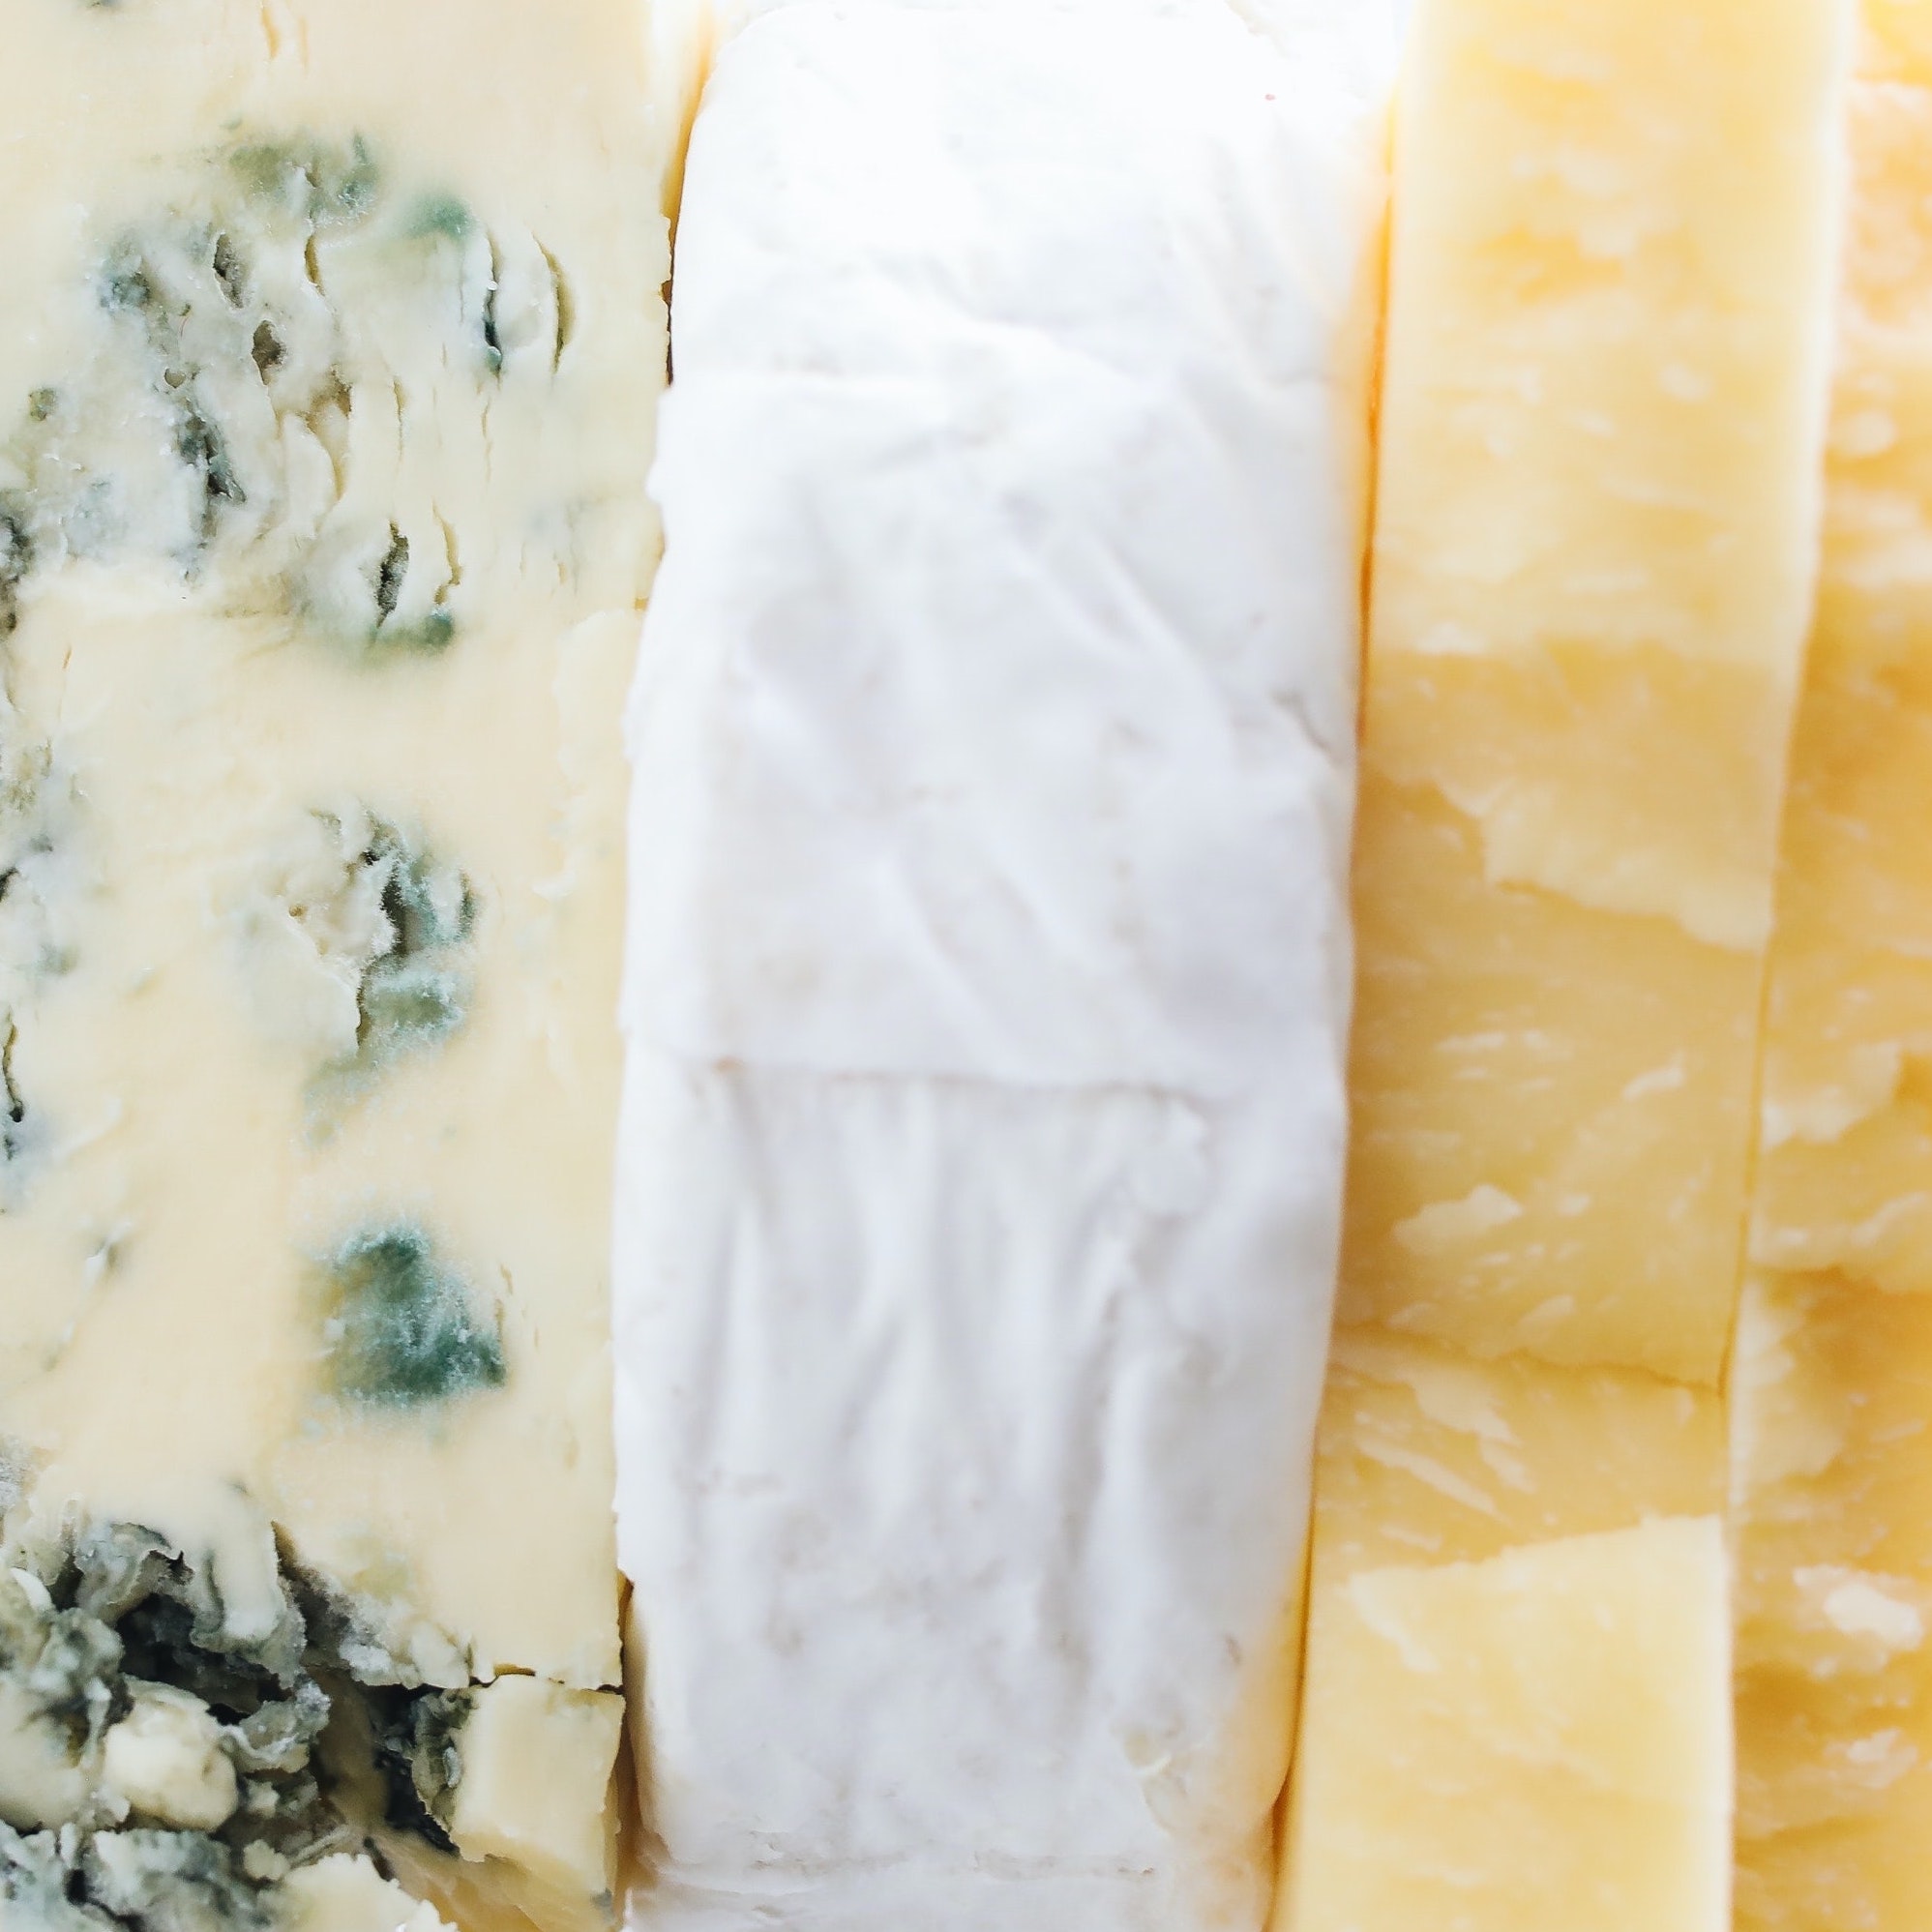 Quels sont les fromages qui font le moins grossir?